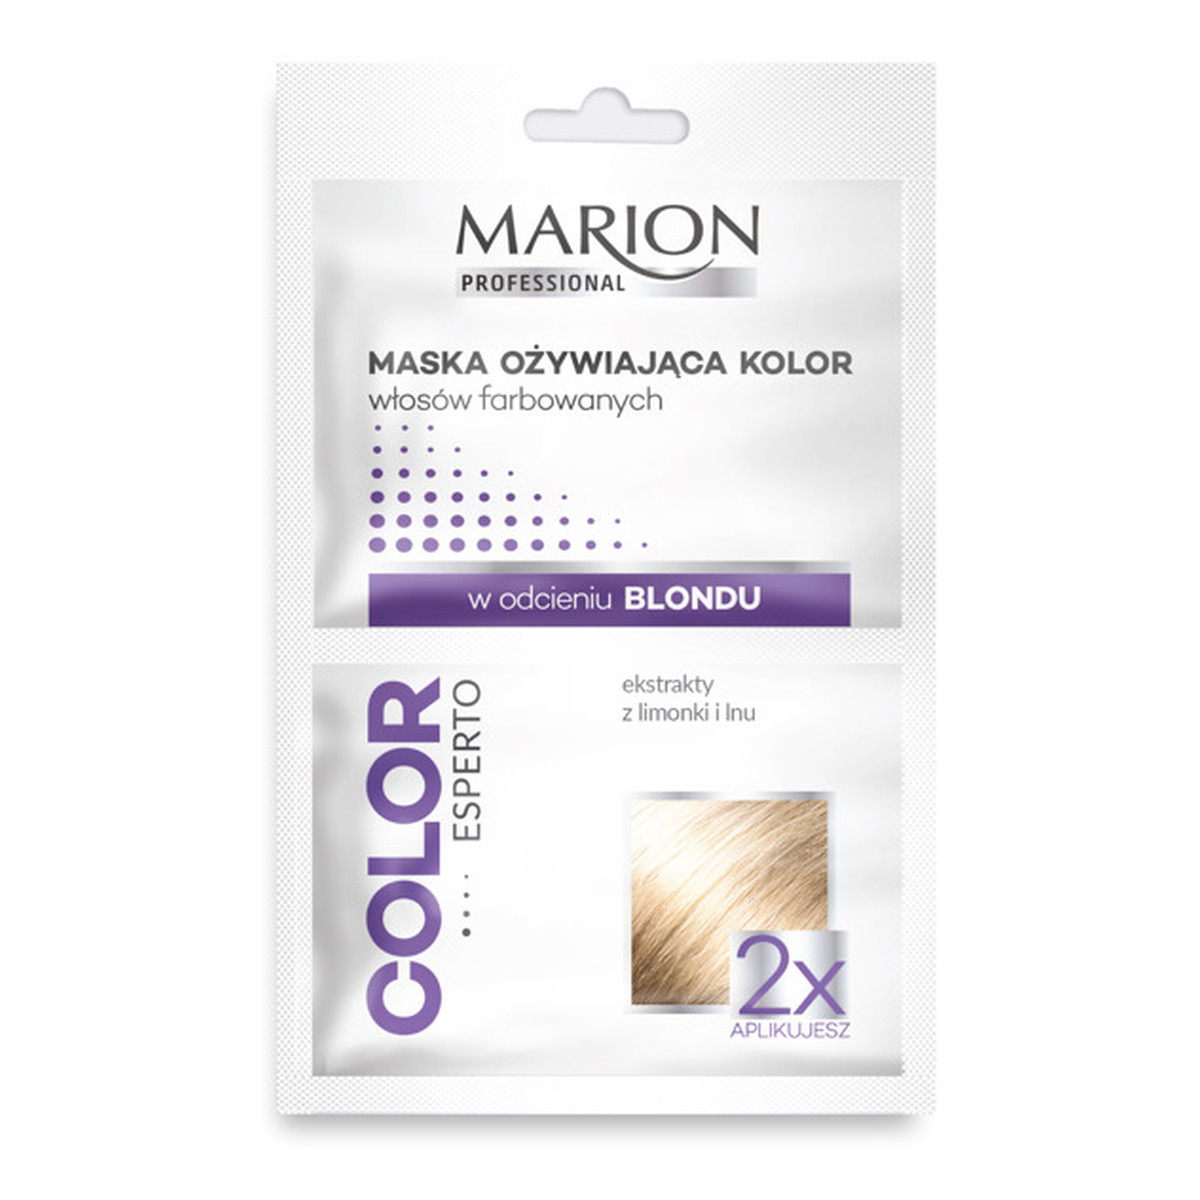 Marion Maxi Color Regenerująca Maska Ożywiająca Do Włosów Farbowanych w Odcieniu Blond 2x20ml 40ml